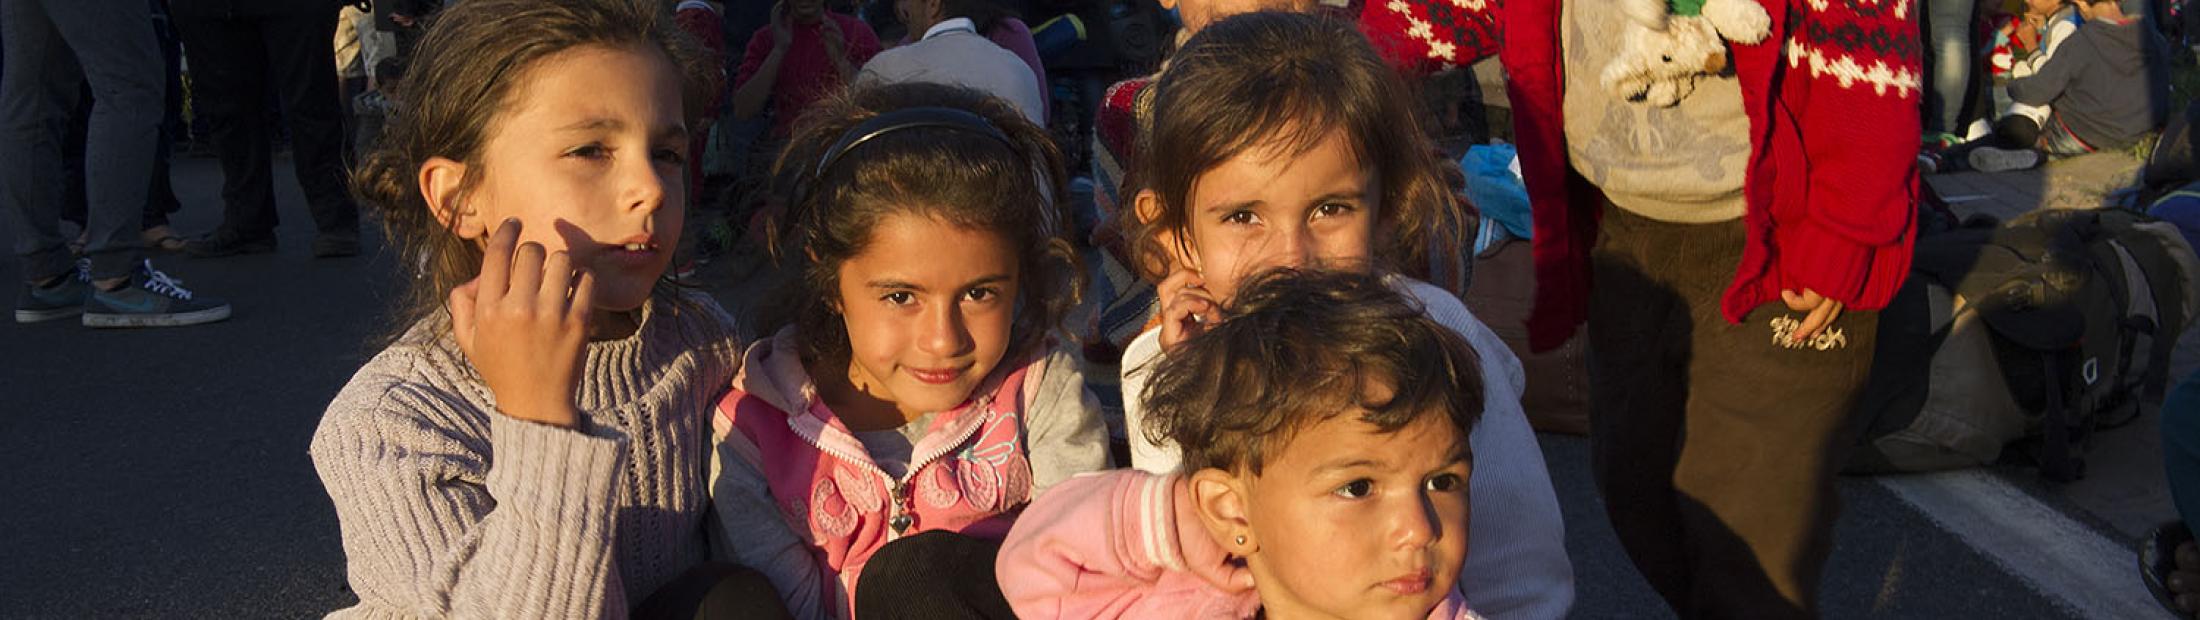 Niños refugiados: la huida en busca de un hogar